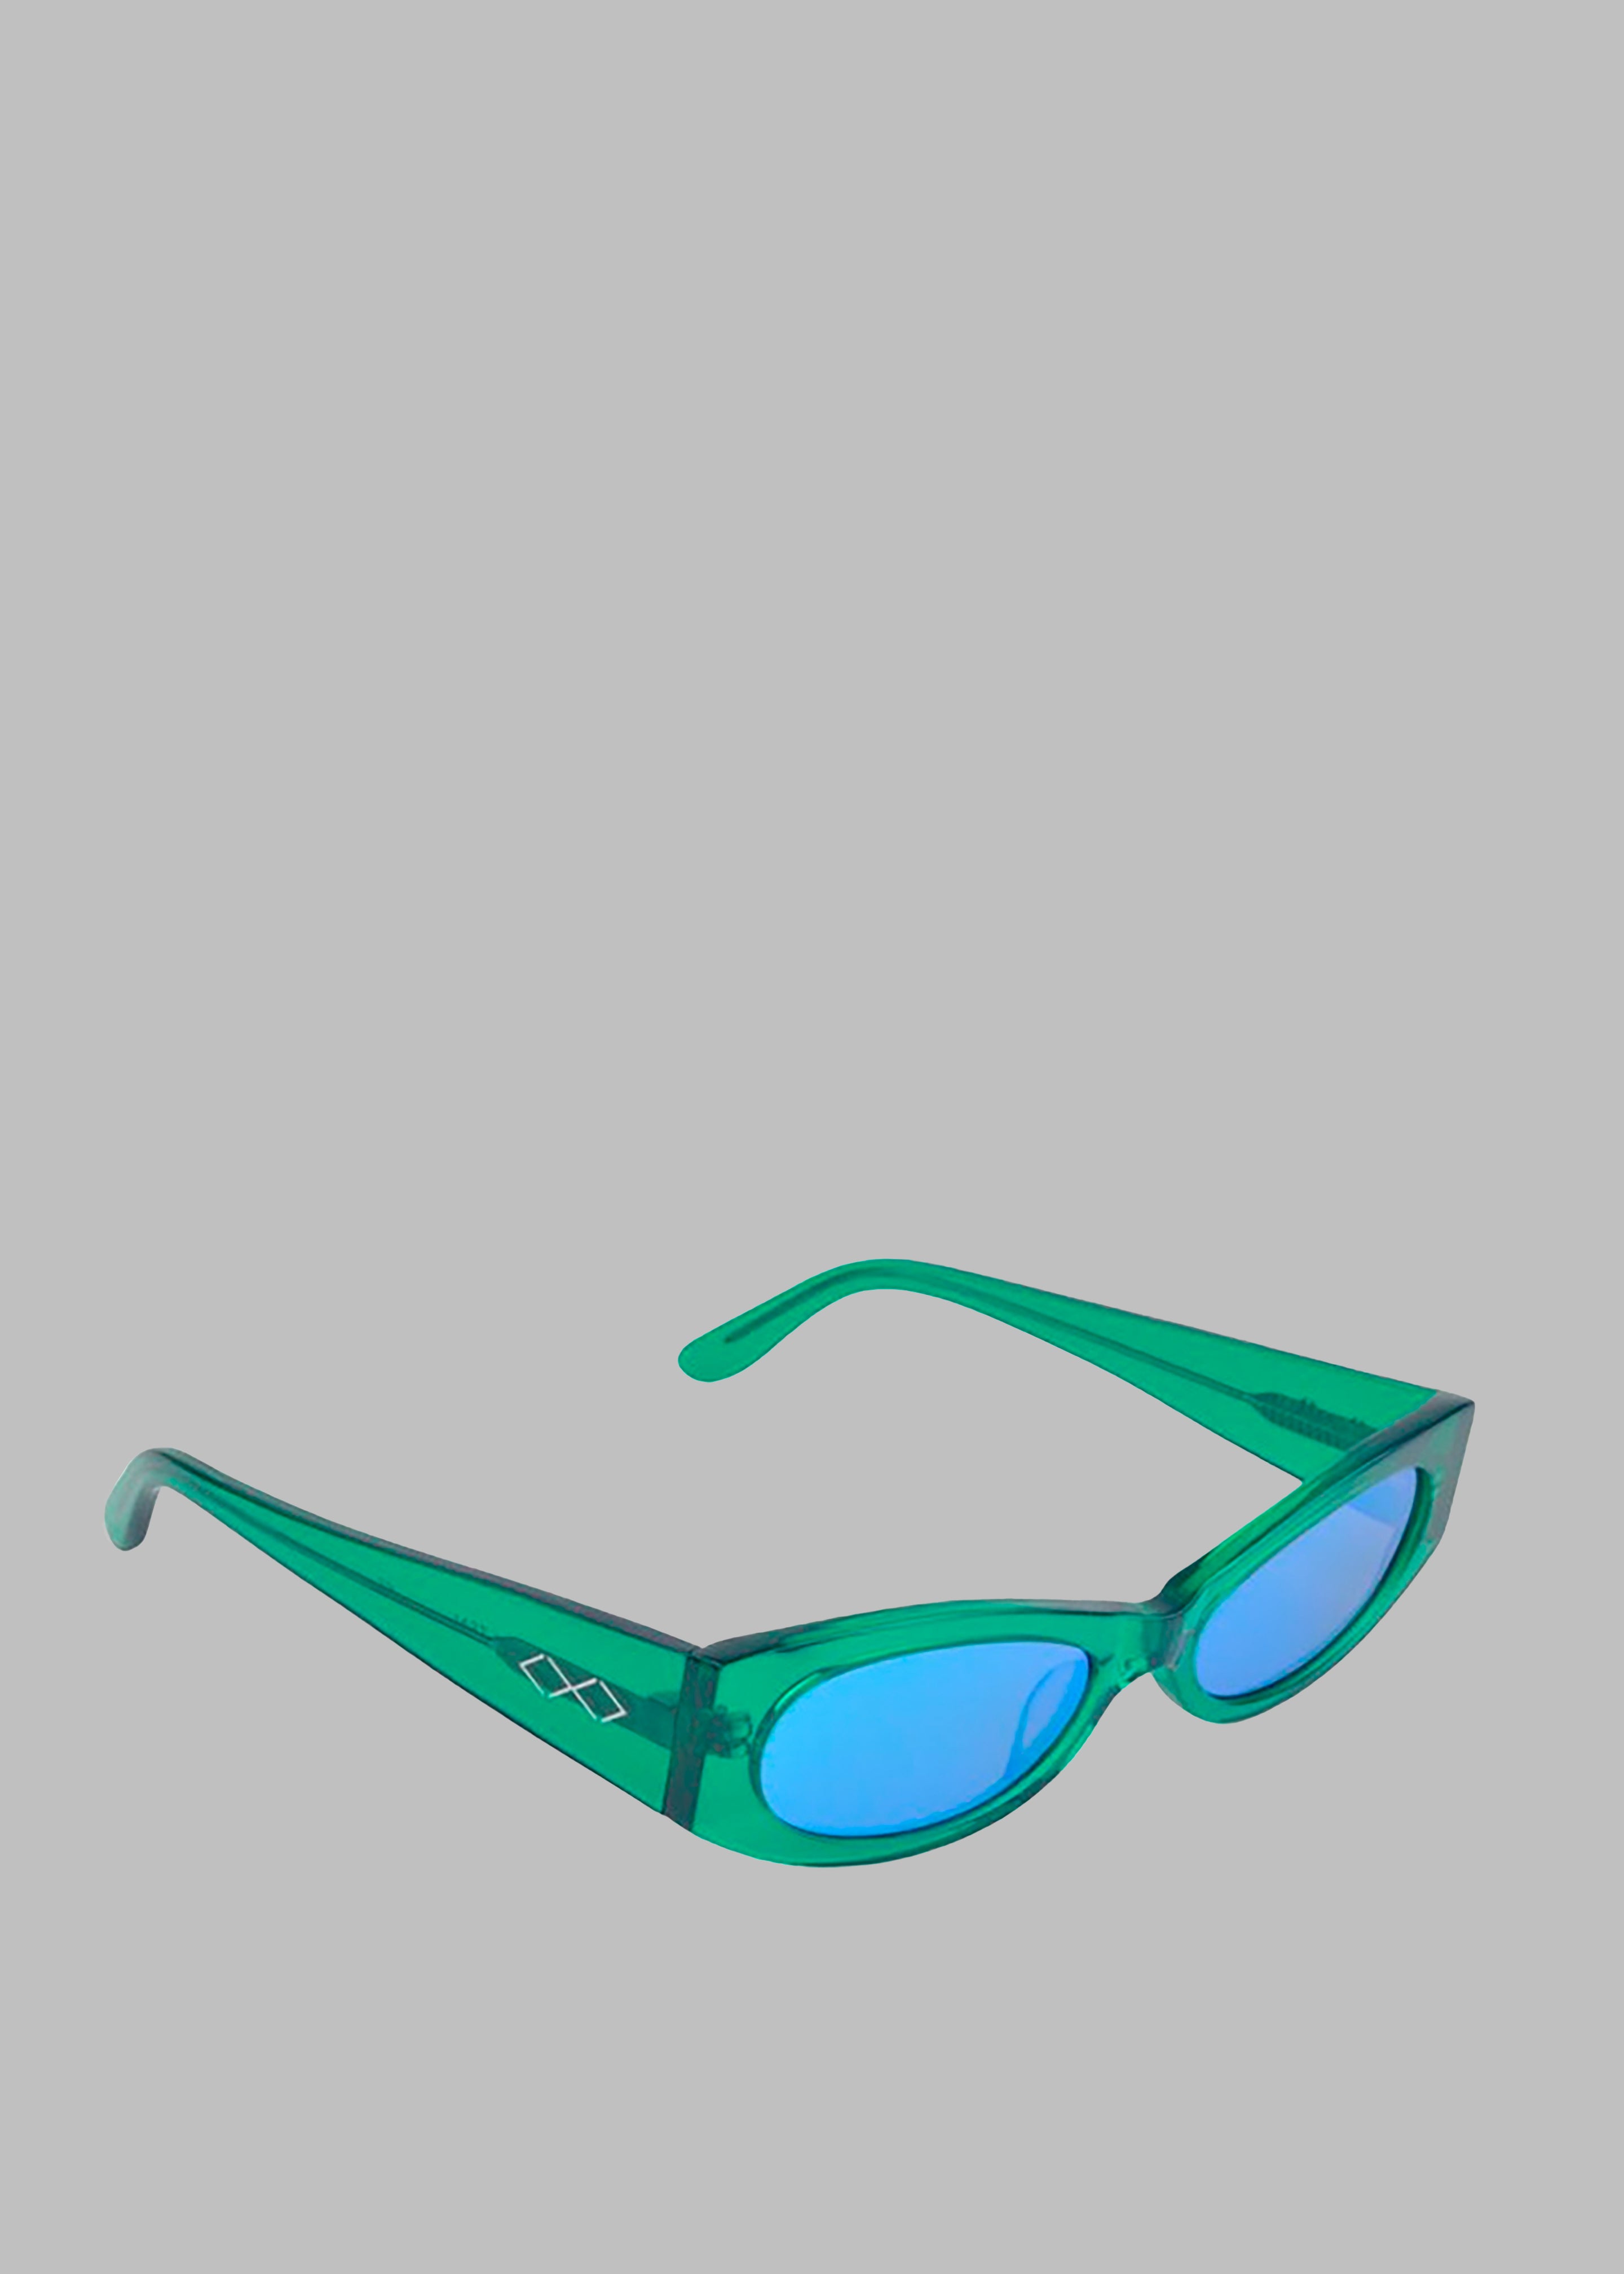 Karen Wazen Ciara Sunglasses - Green Tea - 1